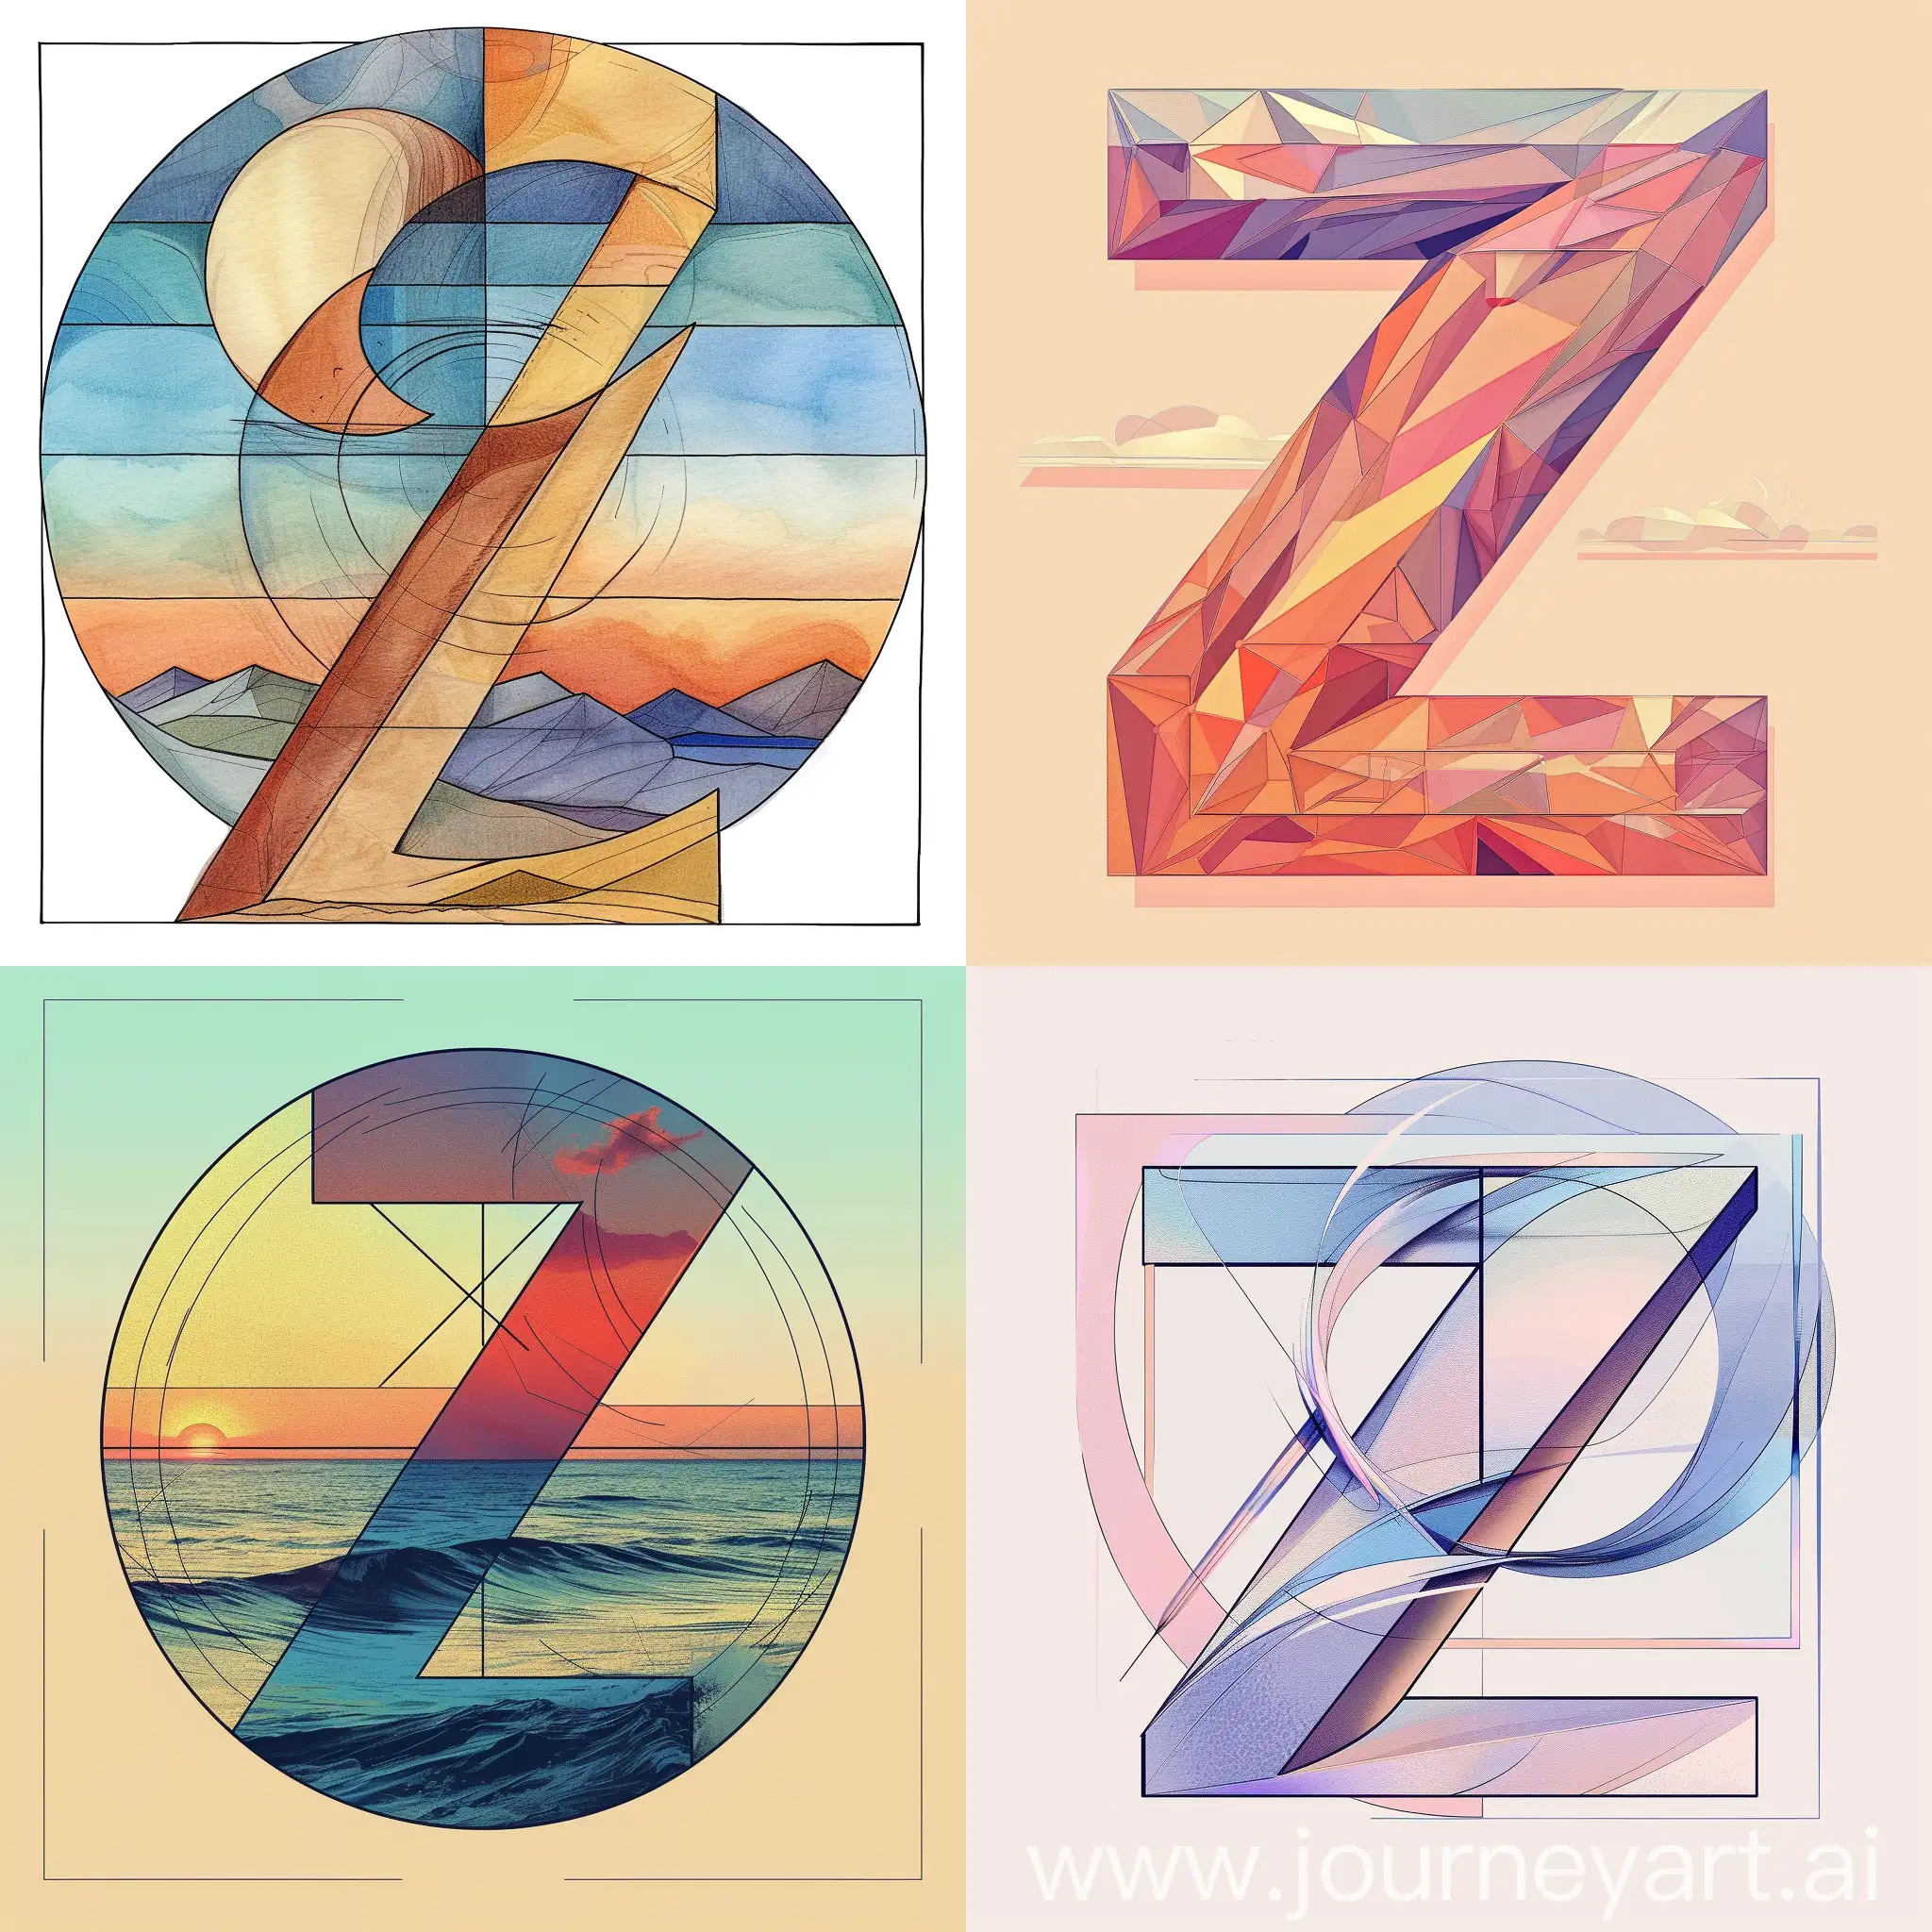 Нарисуй  красивую,букву «Z» для аватарки. Используя правило золотого сечения,а также на заднем фоне сочетание двух гармоничных цветов.